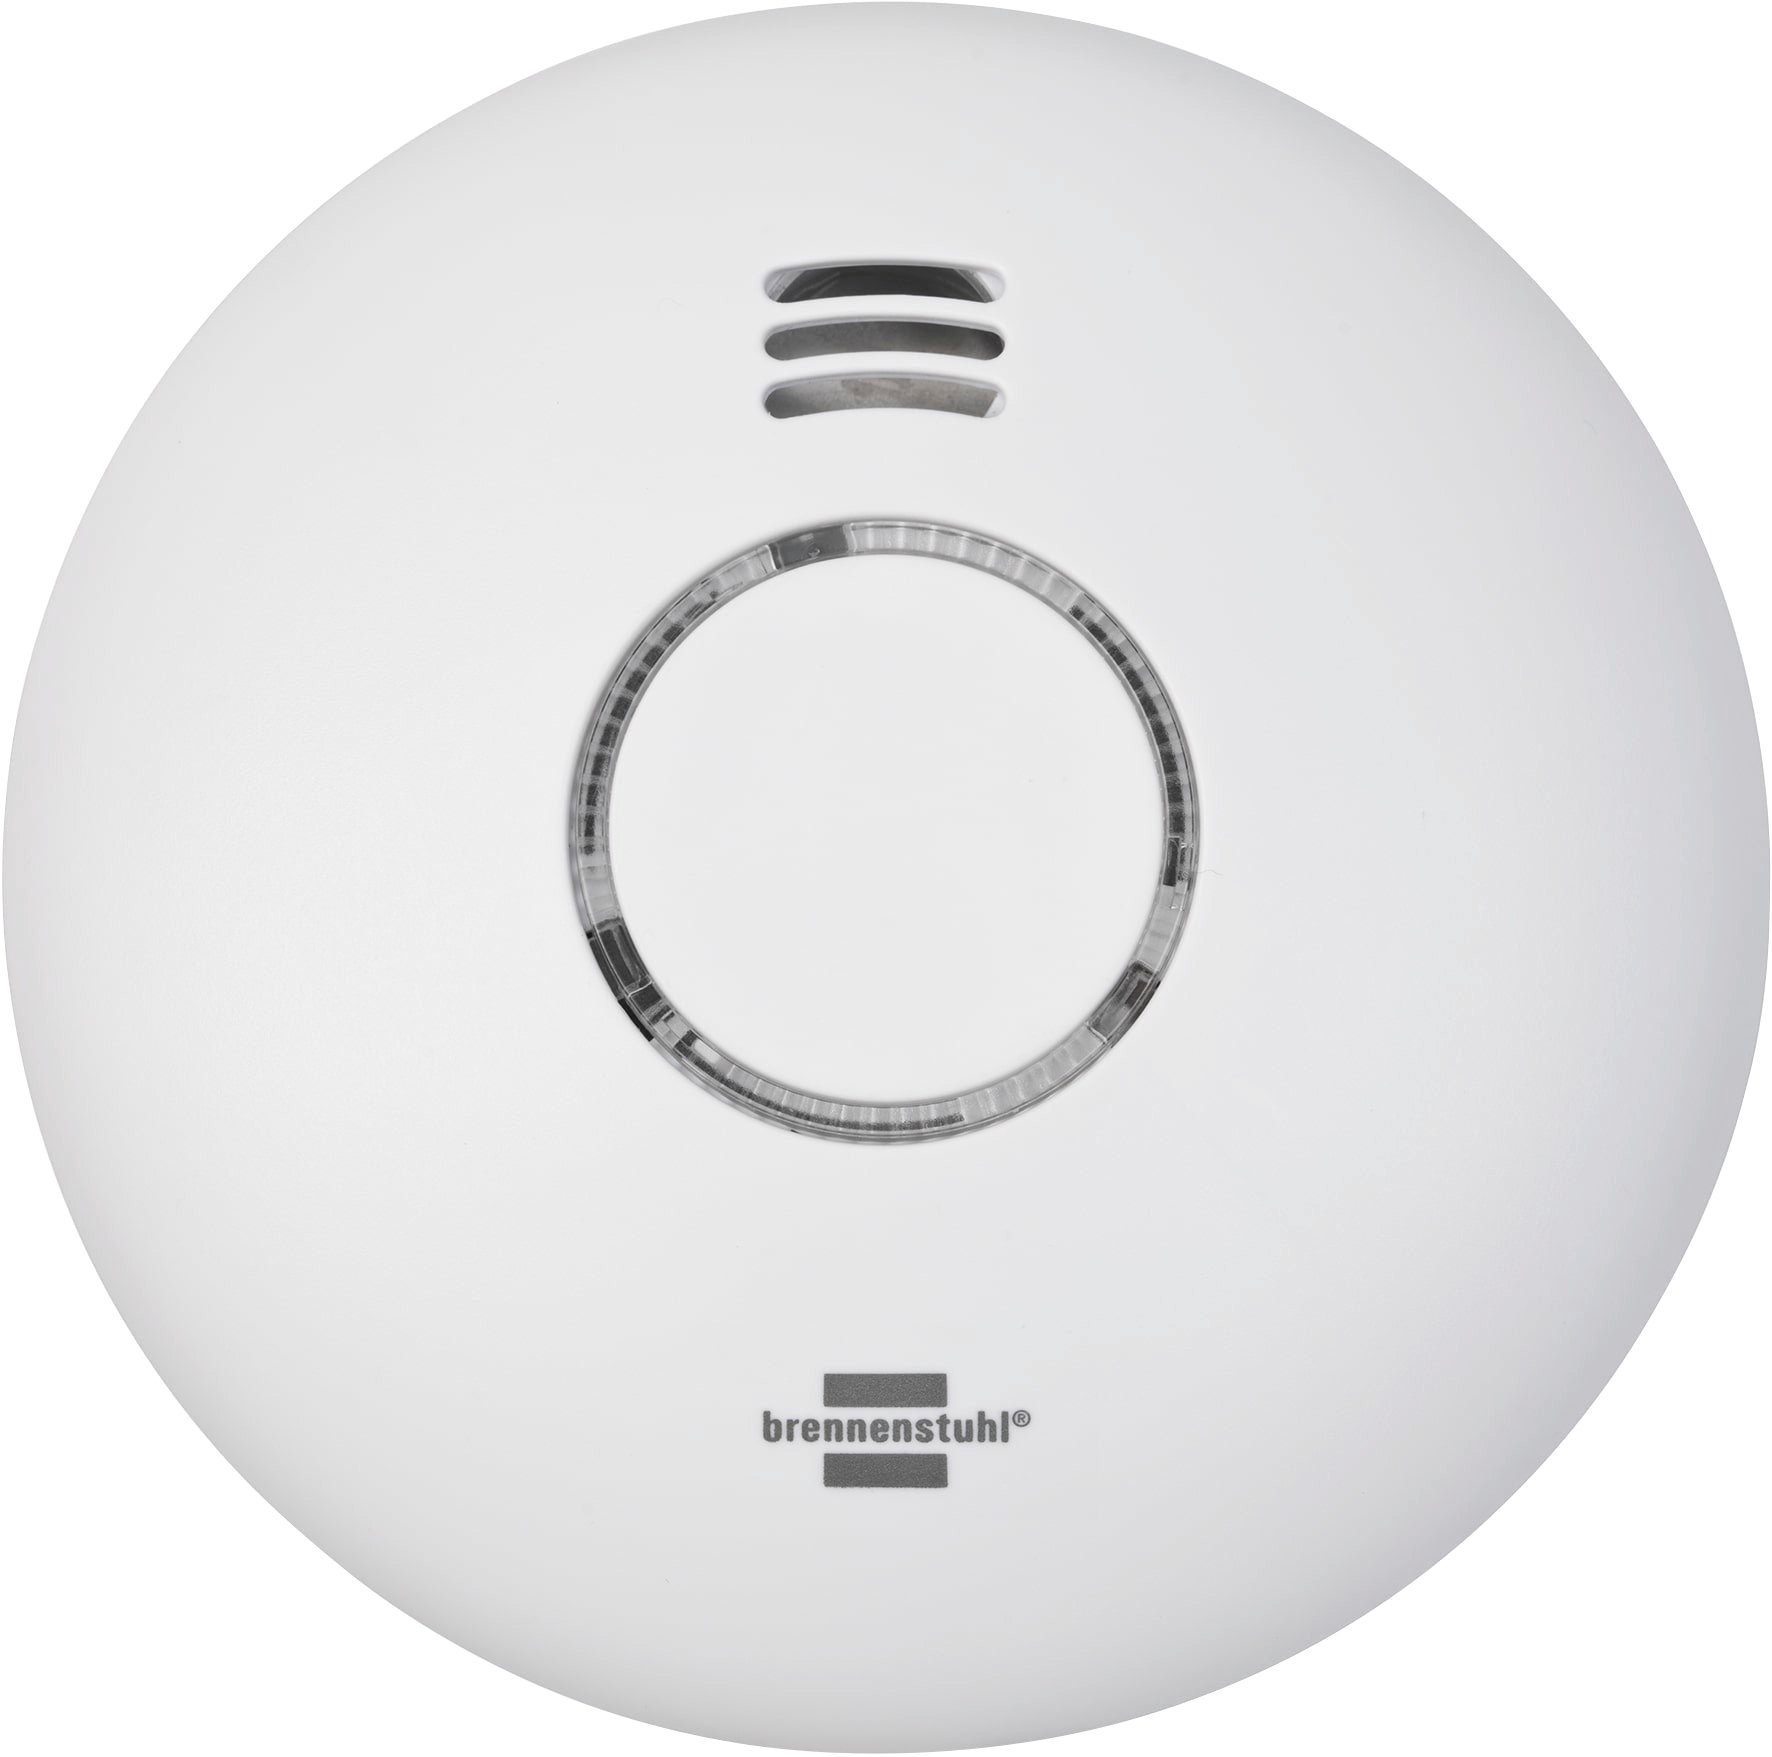 Brennenstuhl WRHM01 Rauch- und Hitzewarnmelder (WiFi-Funktion)